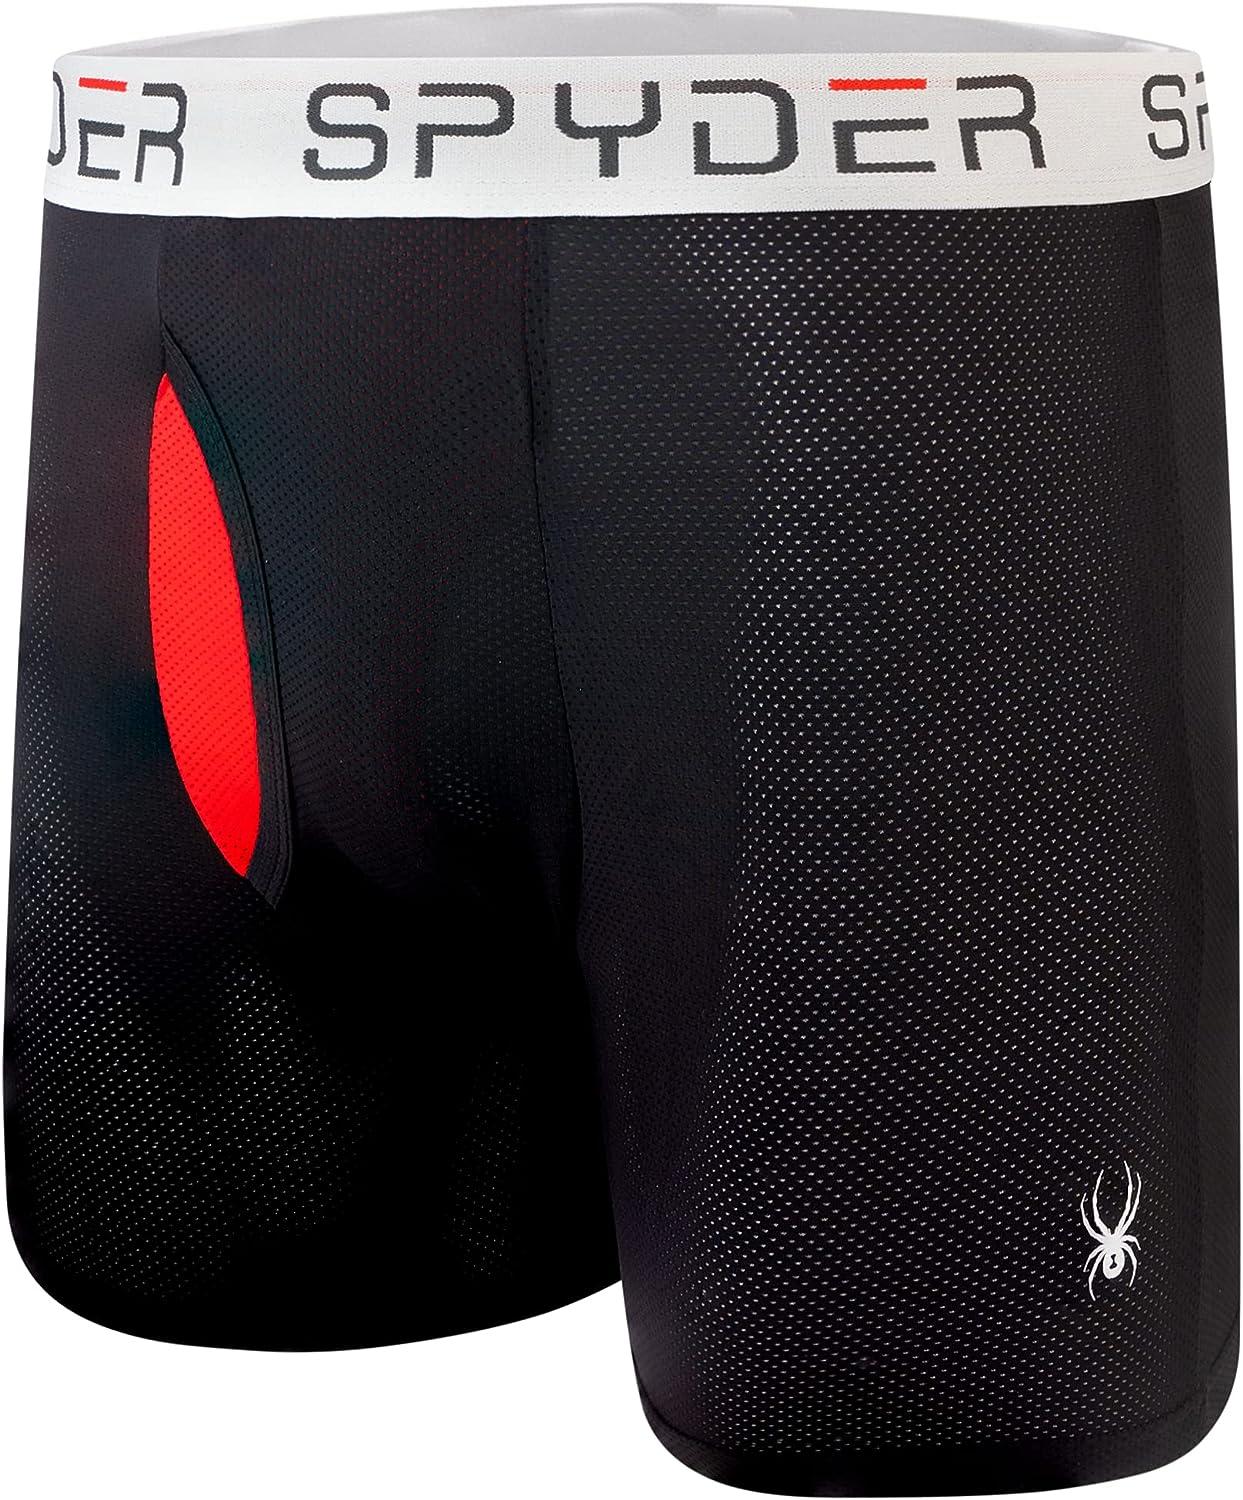 Spyder Performance Mesh Men's Boxer Briefs Sports 3-Pack --SZ&CL